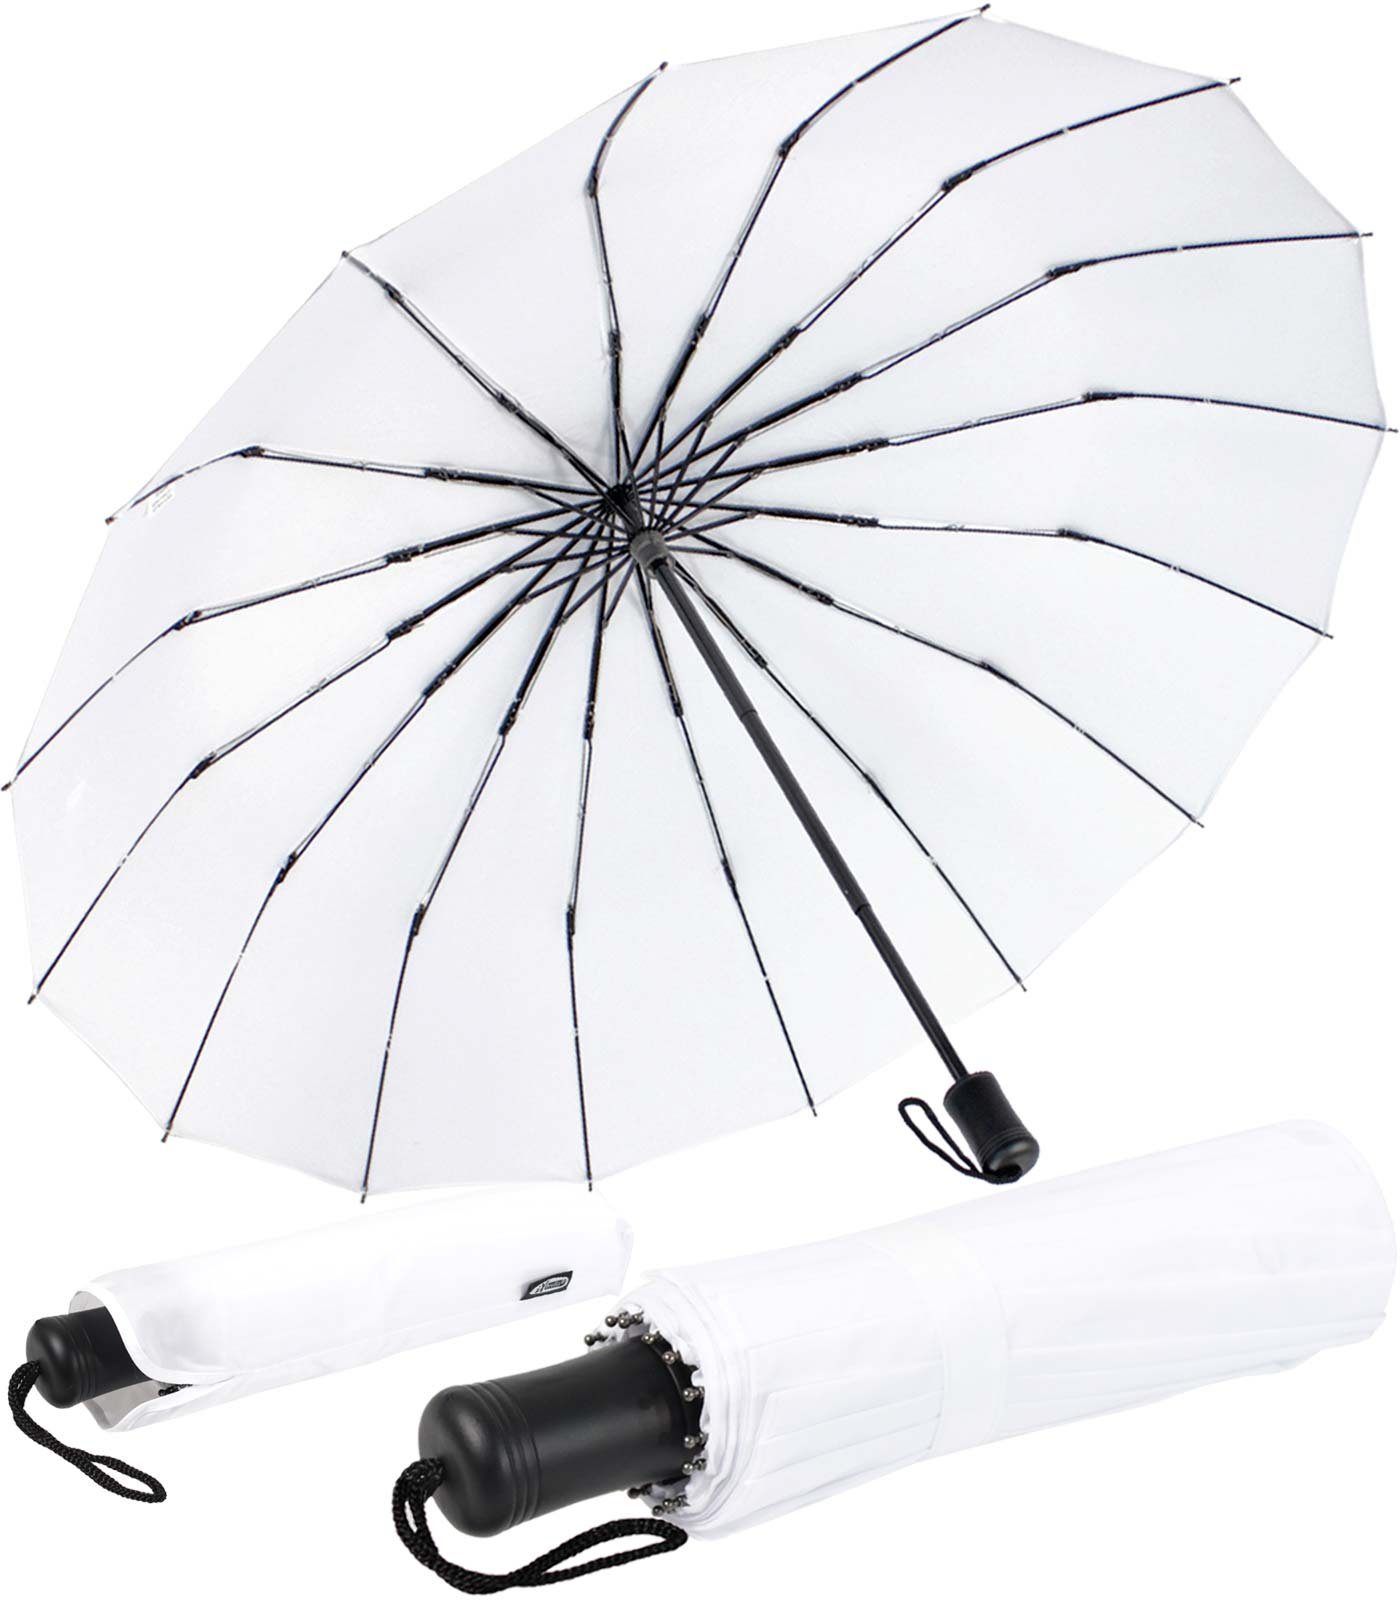 iX-brella Taschenregenschirm Mini mit 16 Streben extra stabil und farbenfroh, auffällig und extravagant weiß